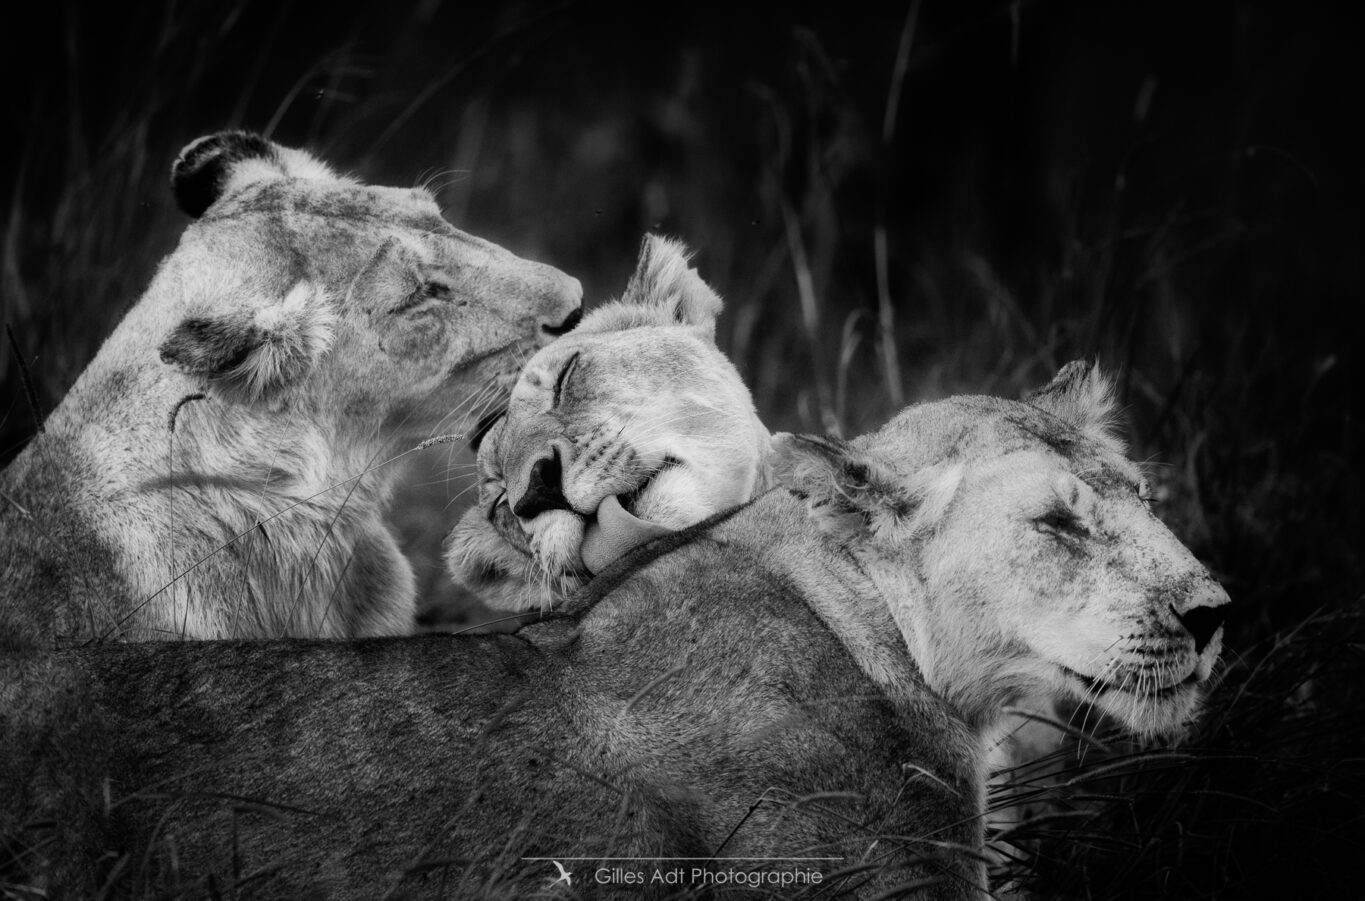 lions en noir et blanc